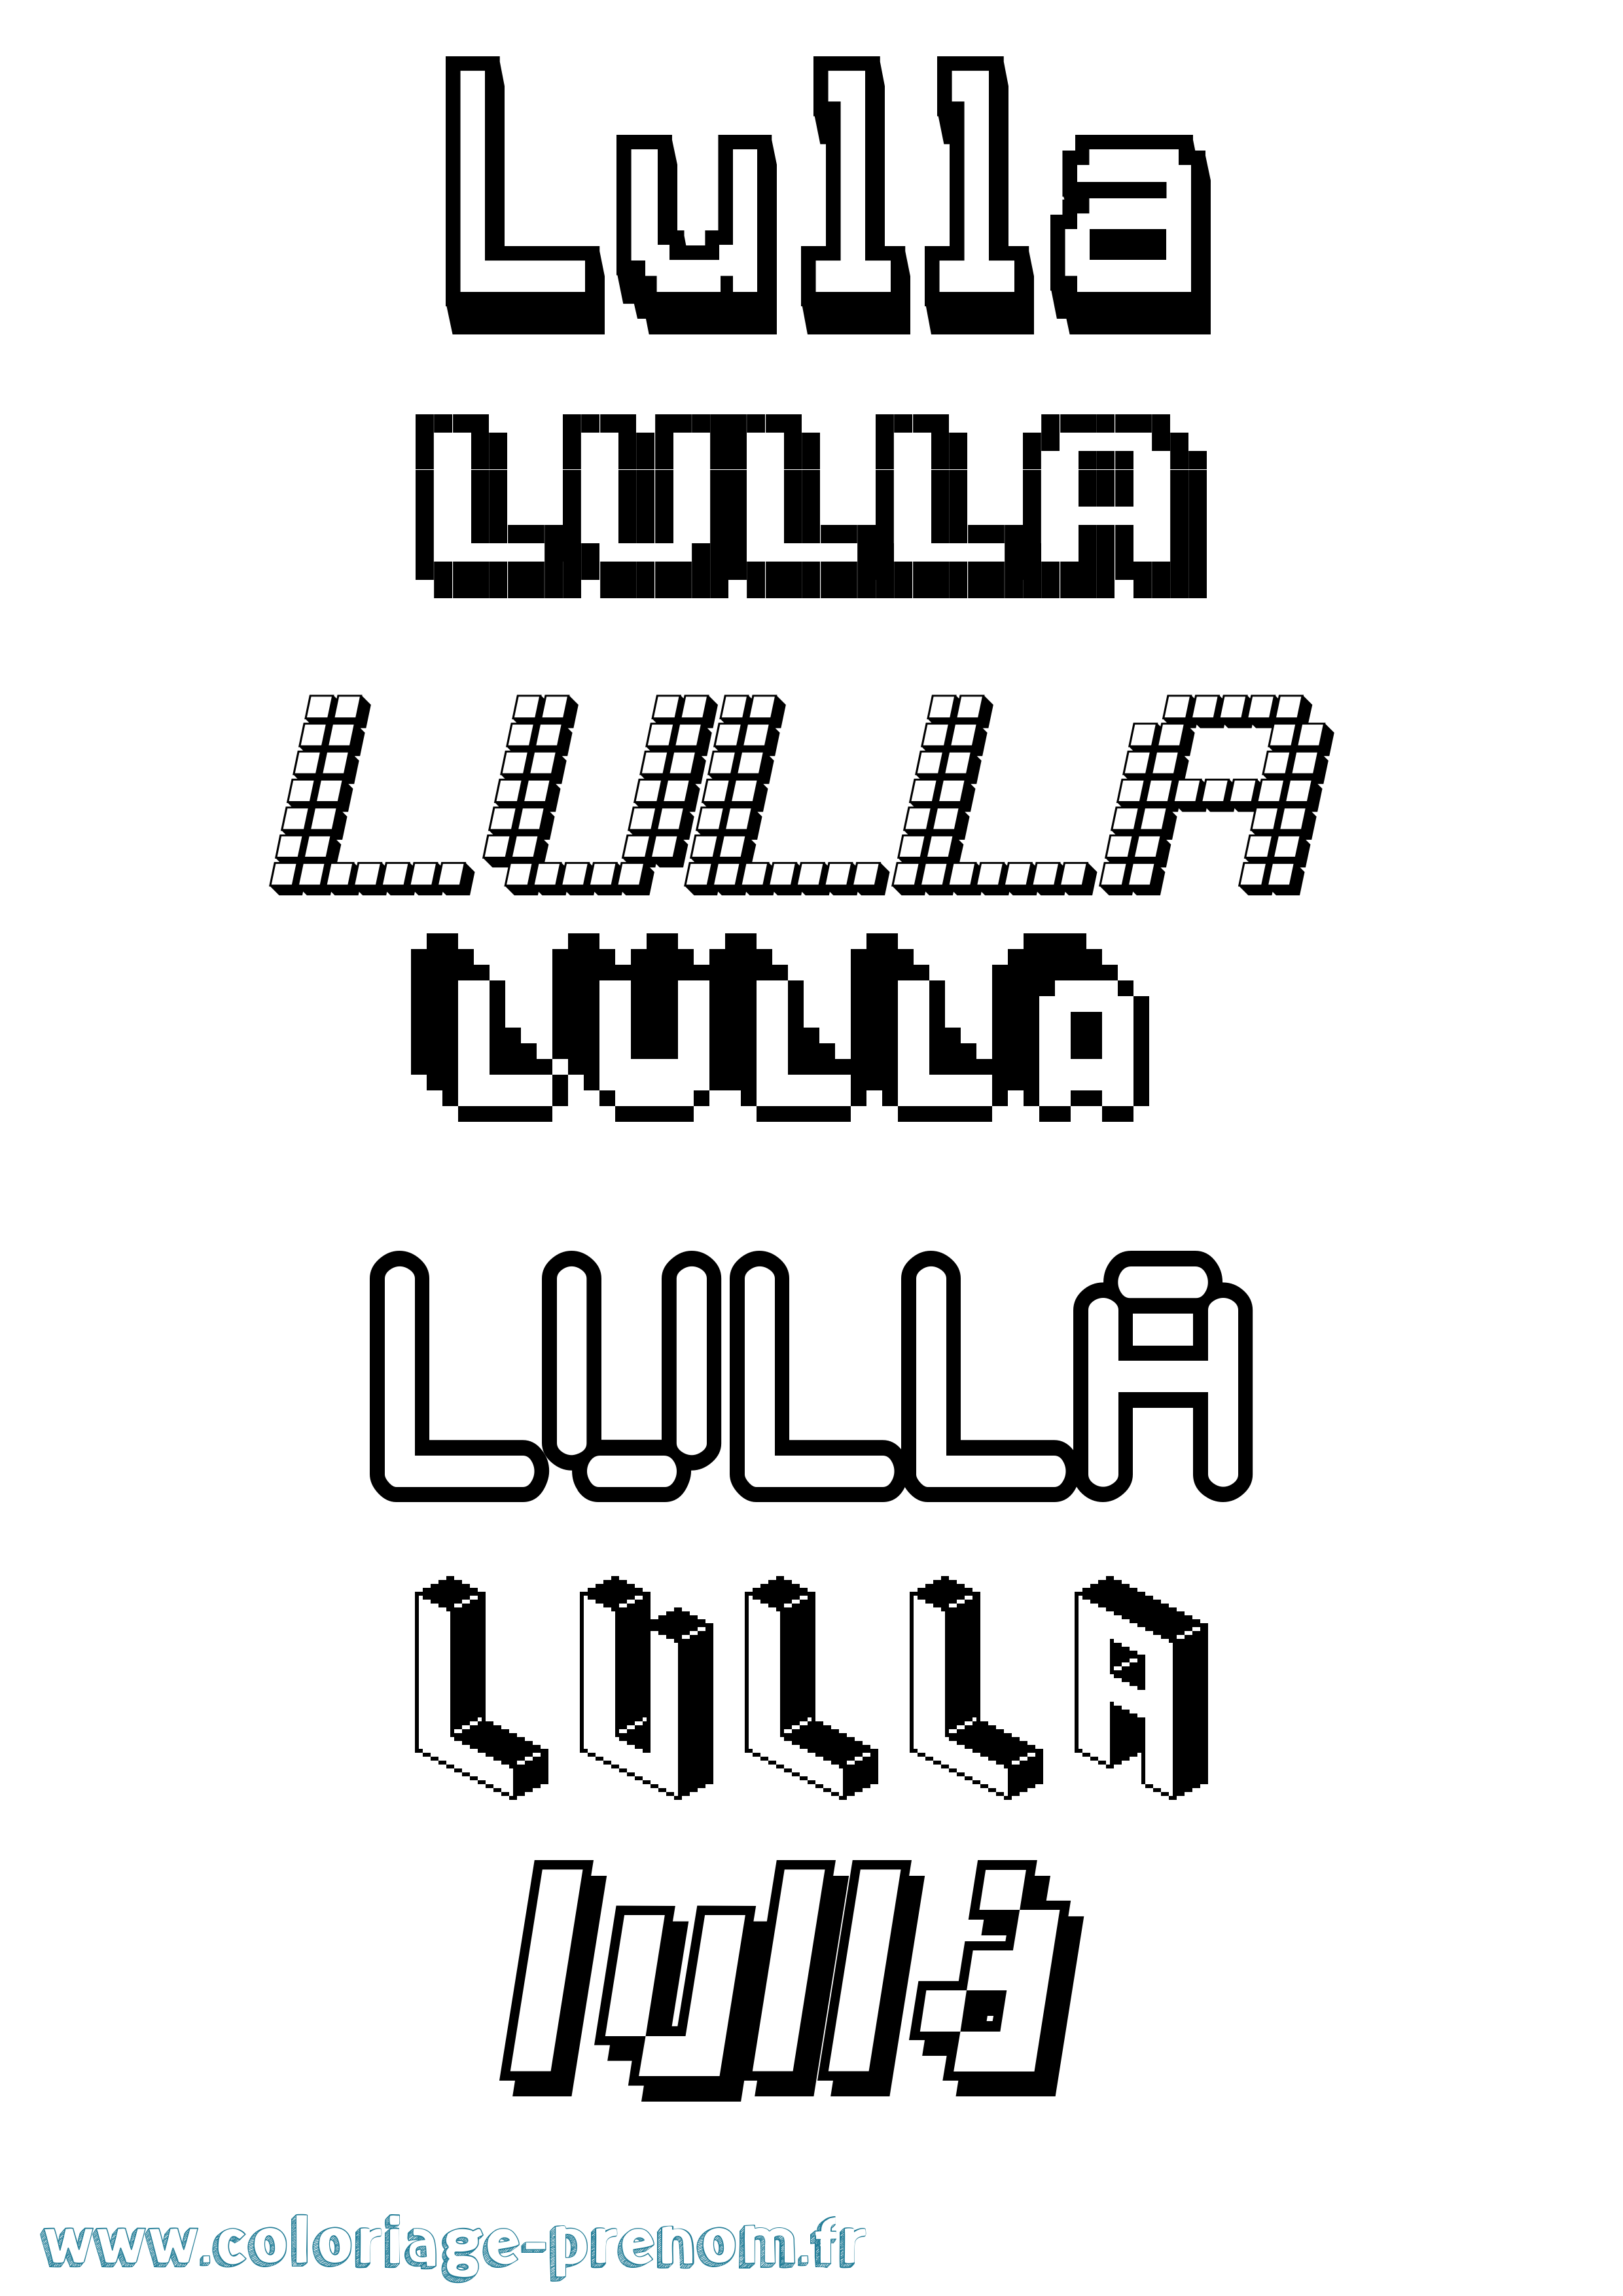 Coloriage prénom Lulla Pixel